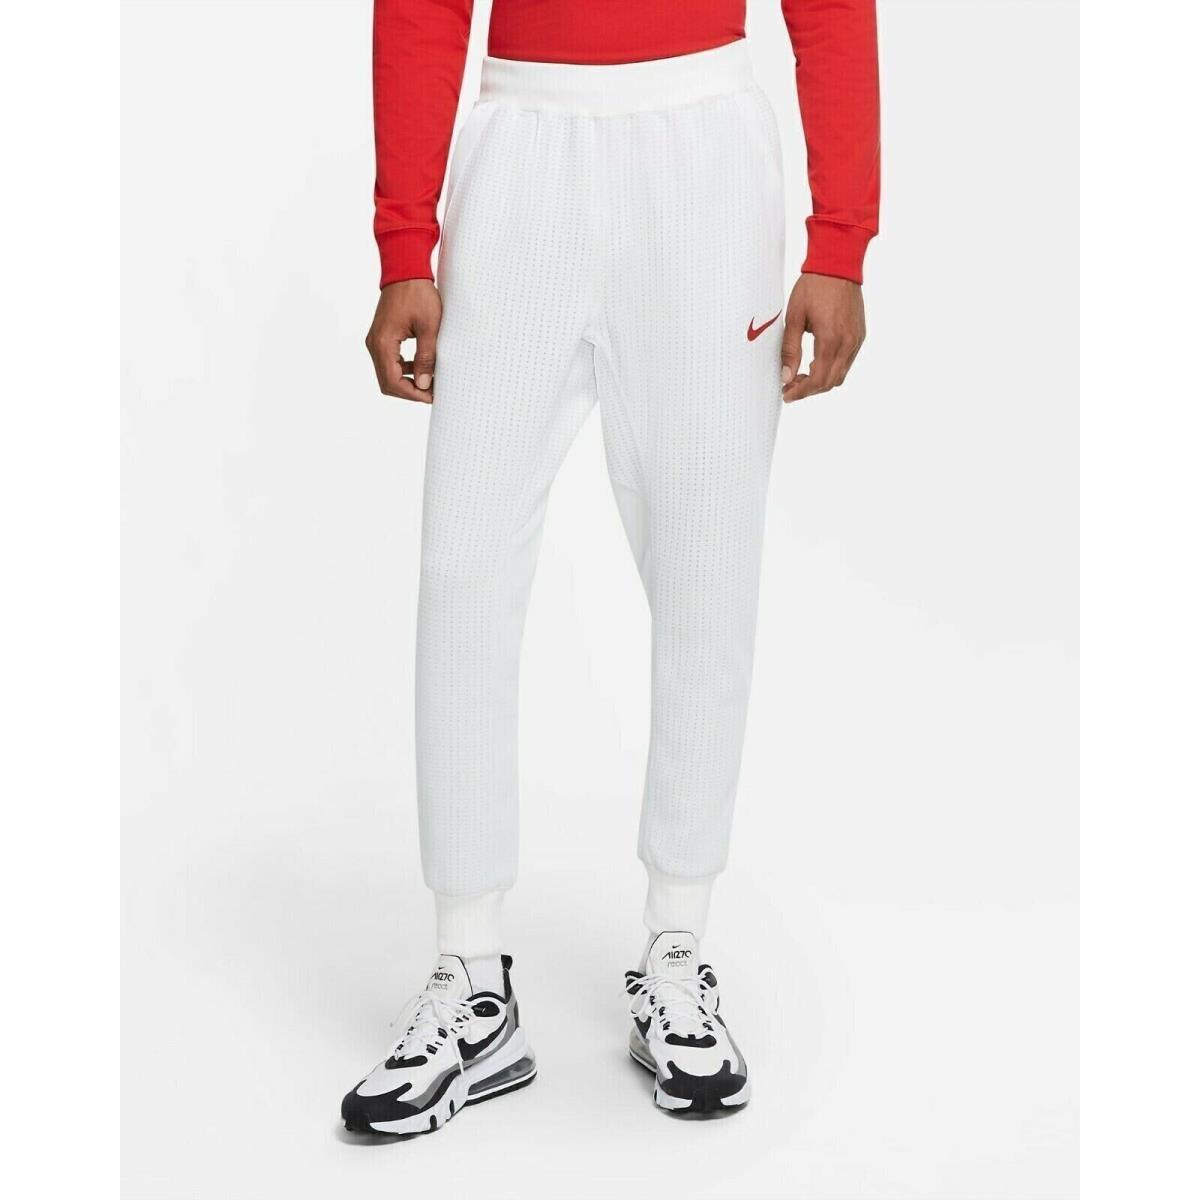 Nike Team Usa Men`s Tech Fleece Jogger Sweatpants CW0302-100 White Size XL